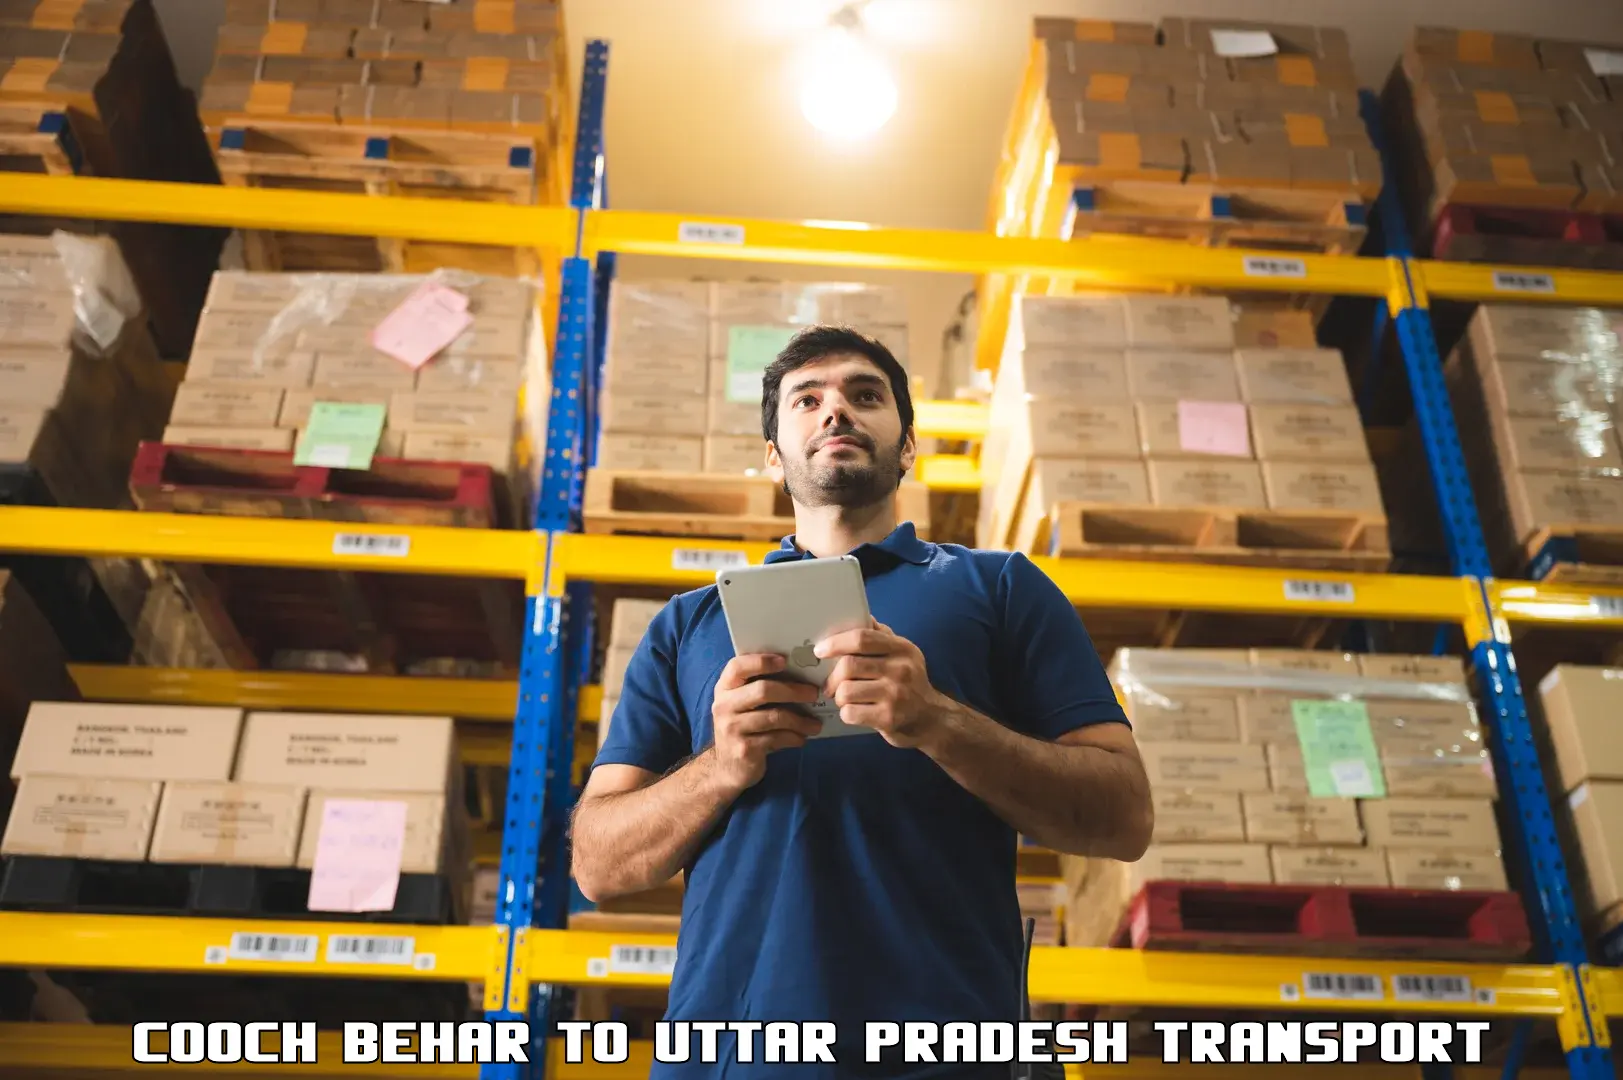 Part load transport service in India Cooch Behar to Tilhar